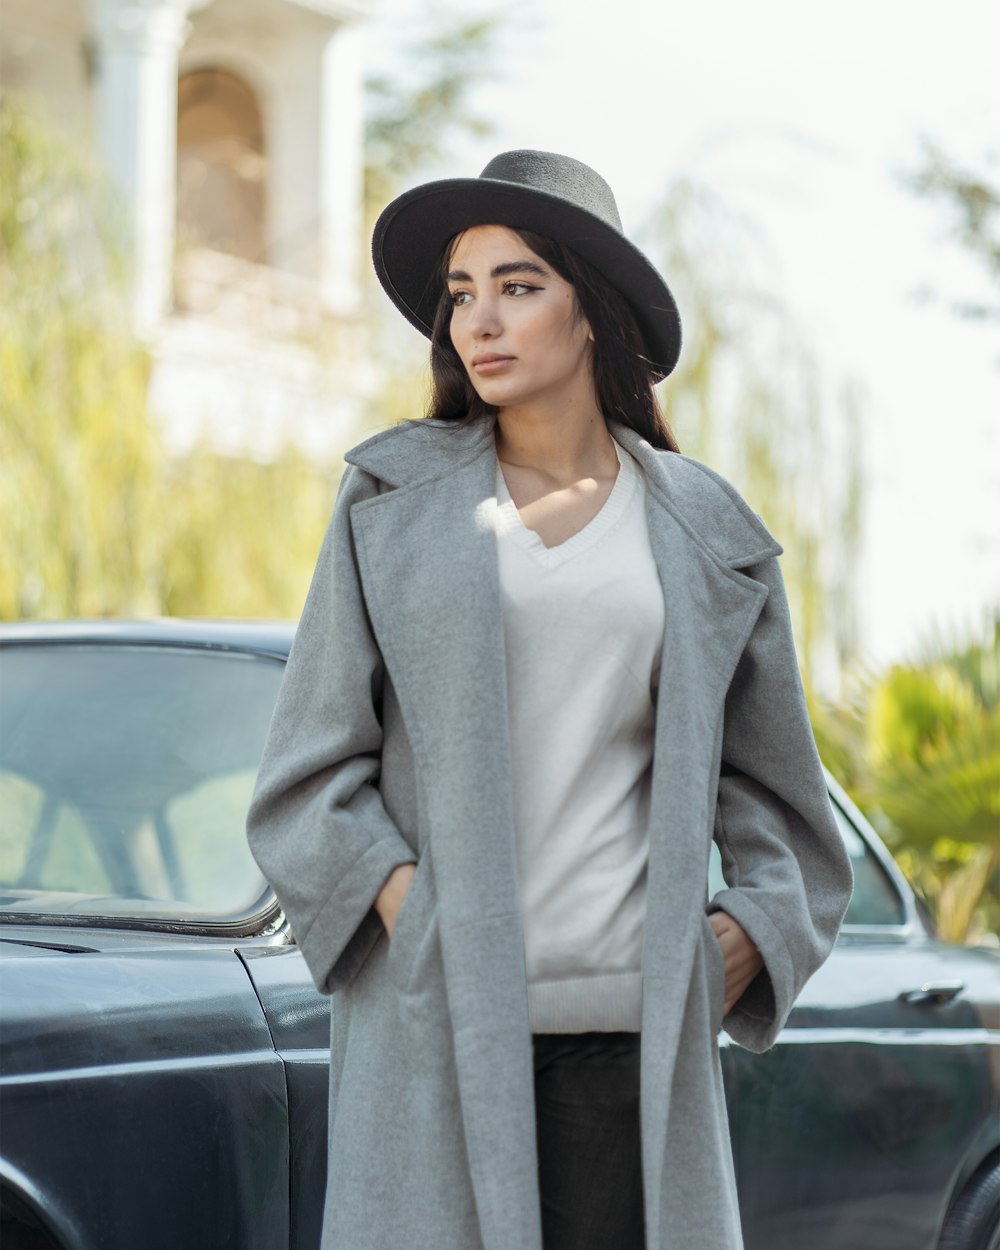 Una persona con un cappotto grigio e un cappello in piedi accanto a una macchina